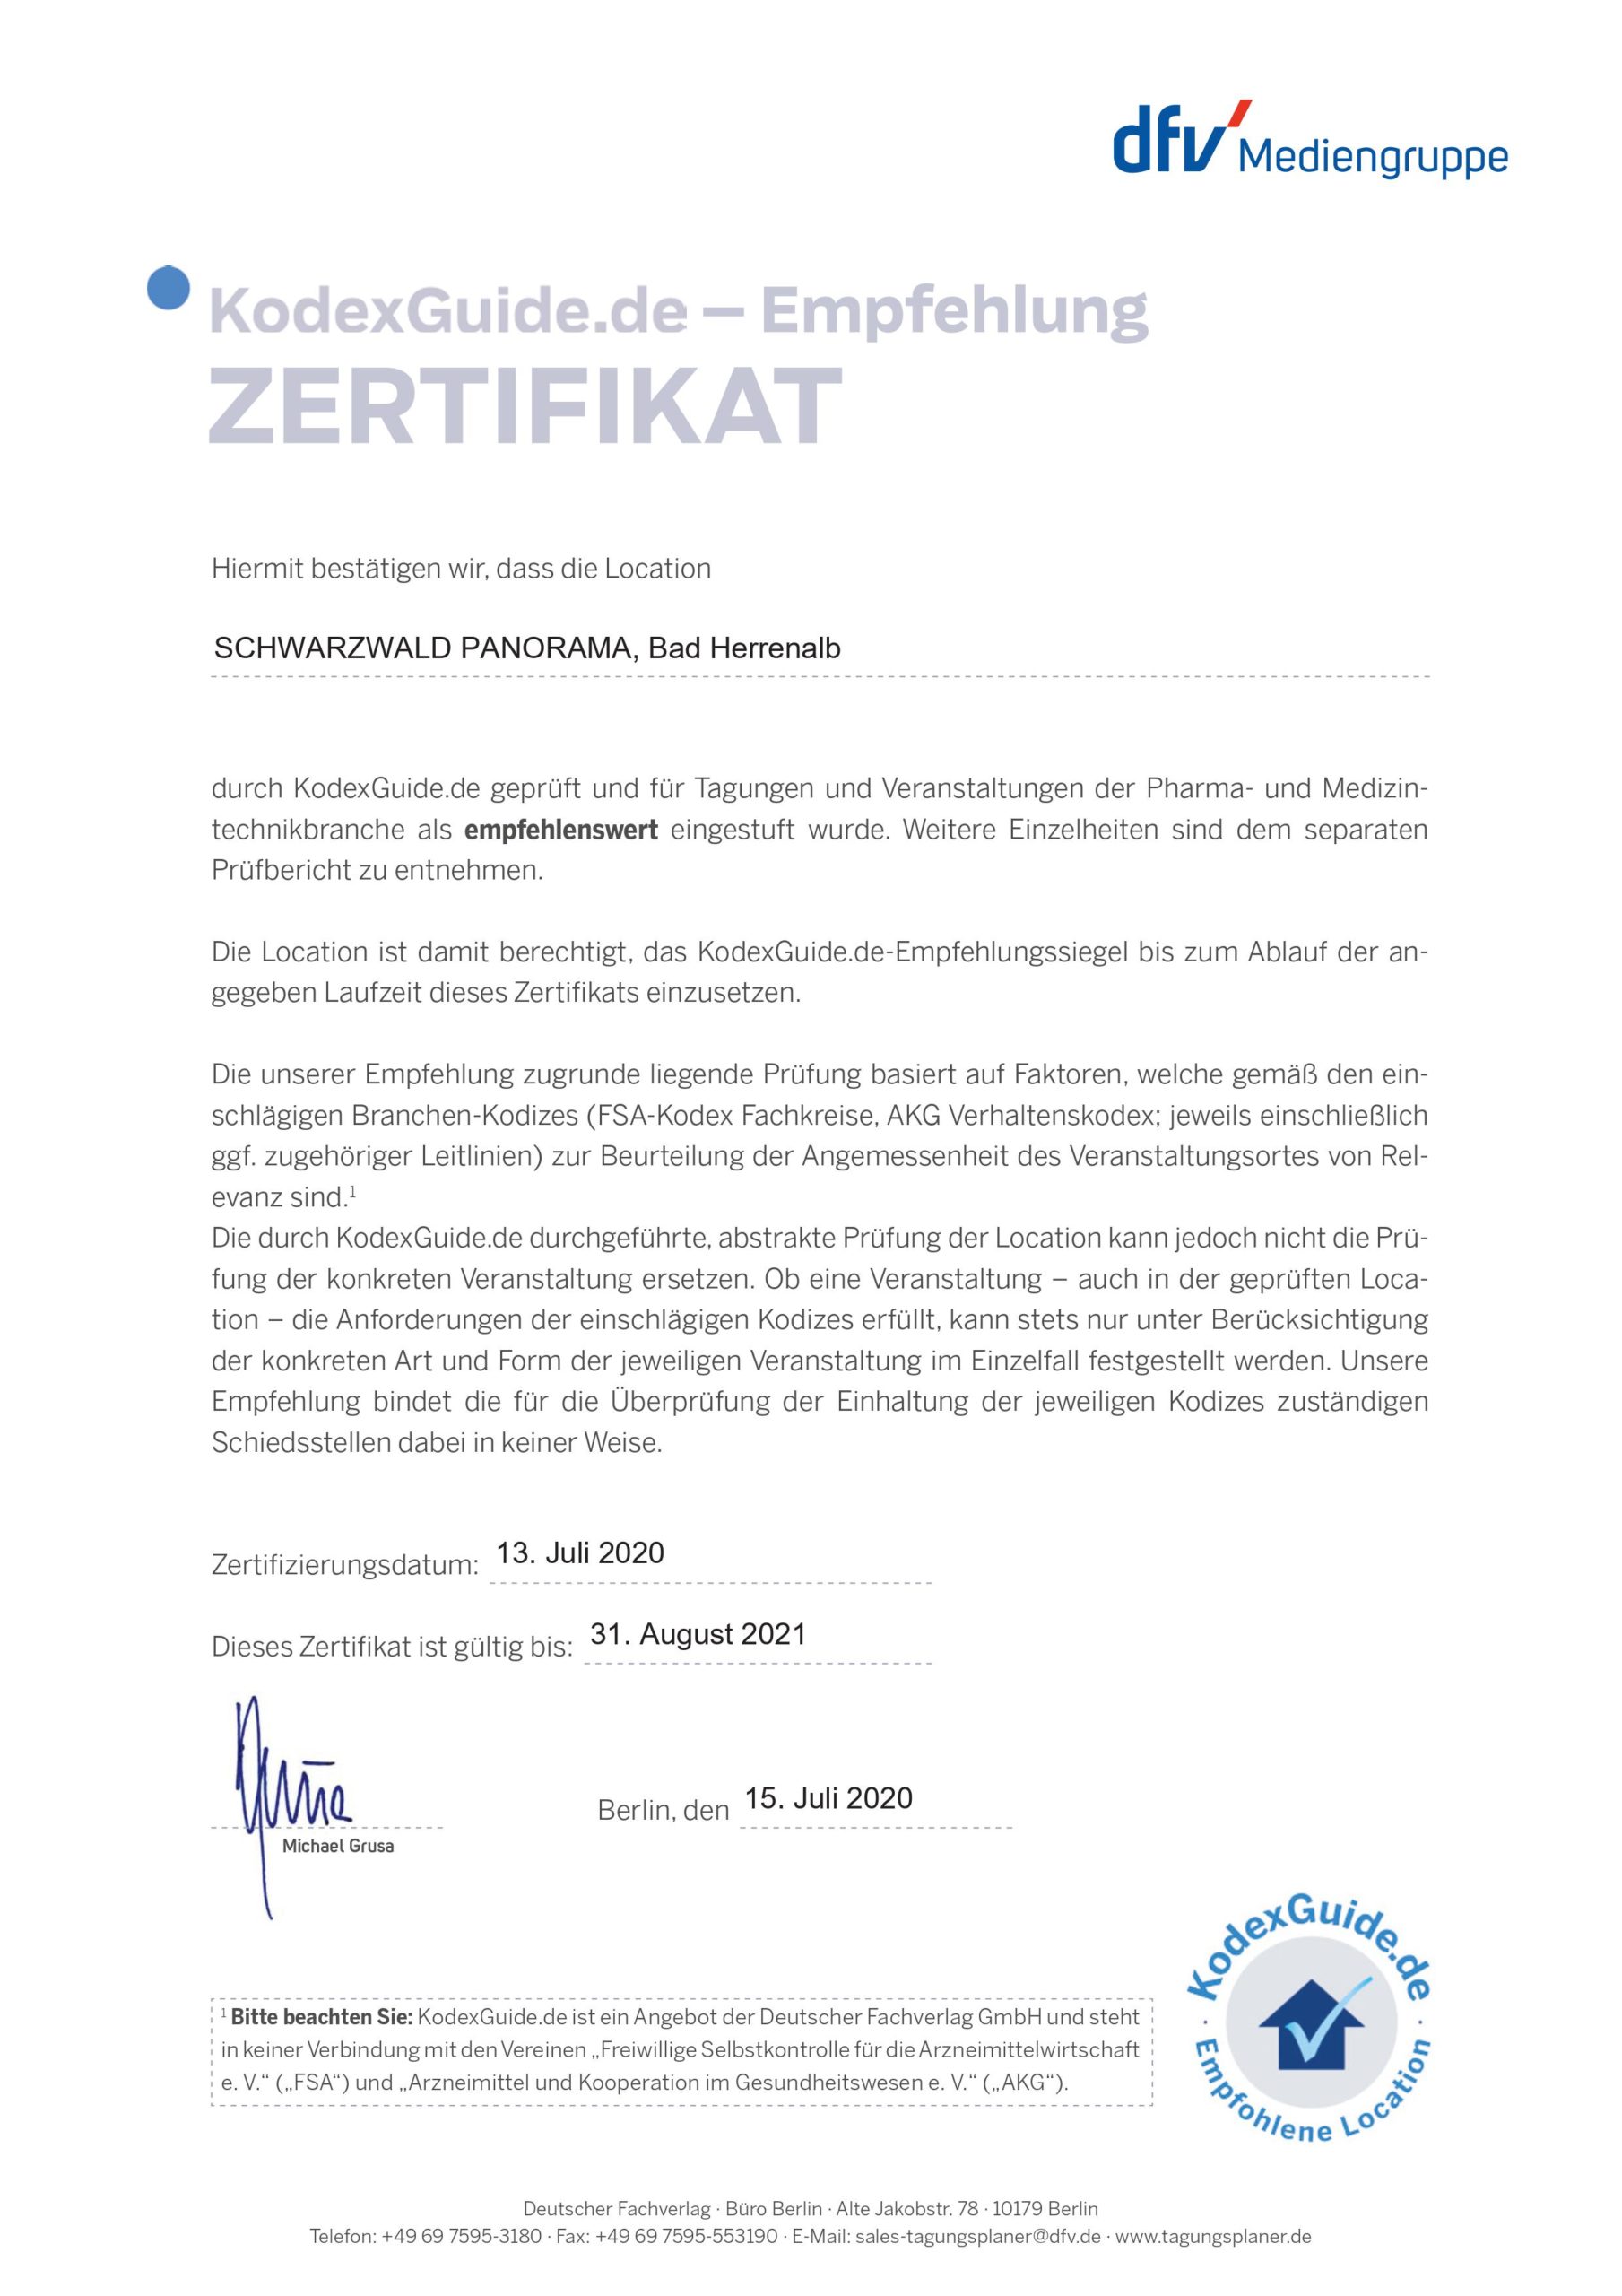 Ein Zertifikat von KodexGuide welches das Tagungshotel SCHWARZWALD PANORAMA für Tagungen und Veranstaltungen der Pharma & Medizin- Branche als empfehlenswert einstuft